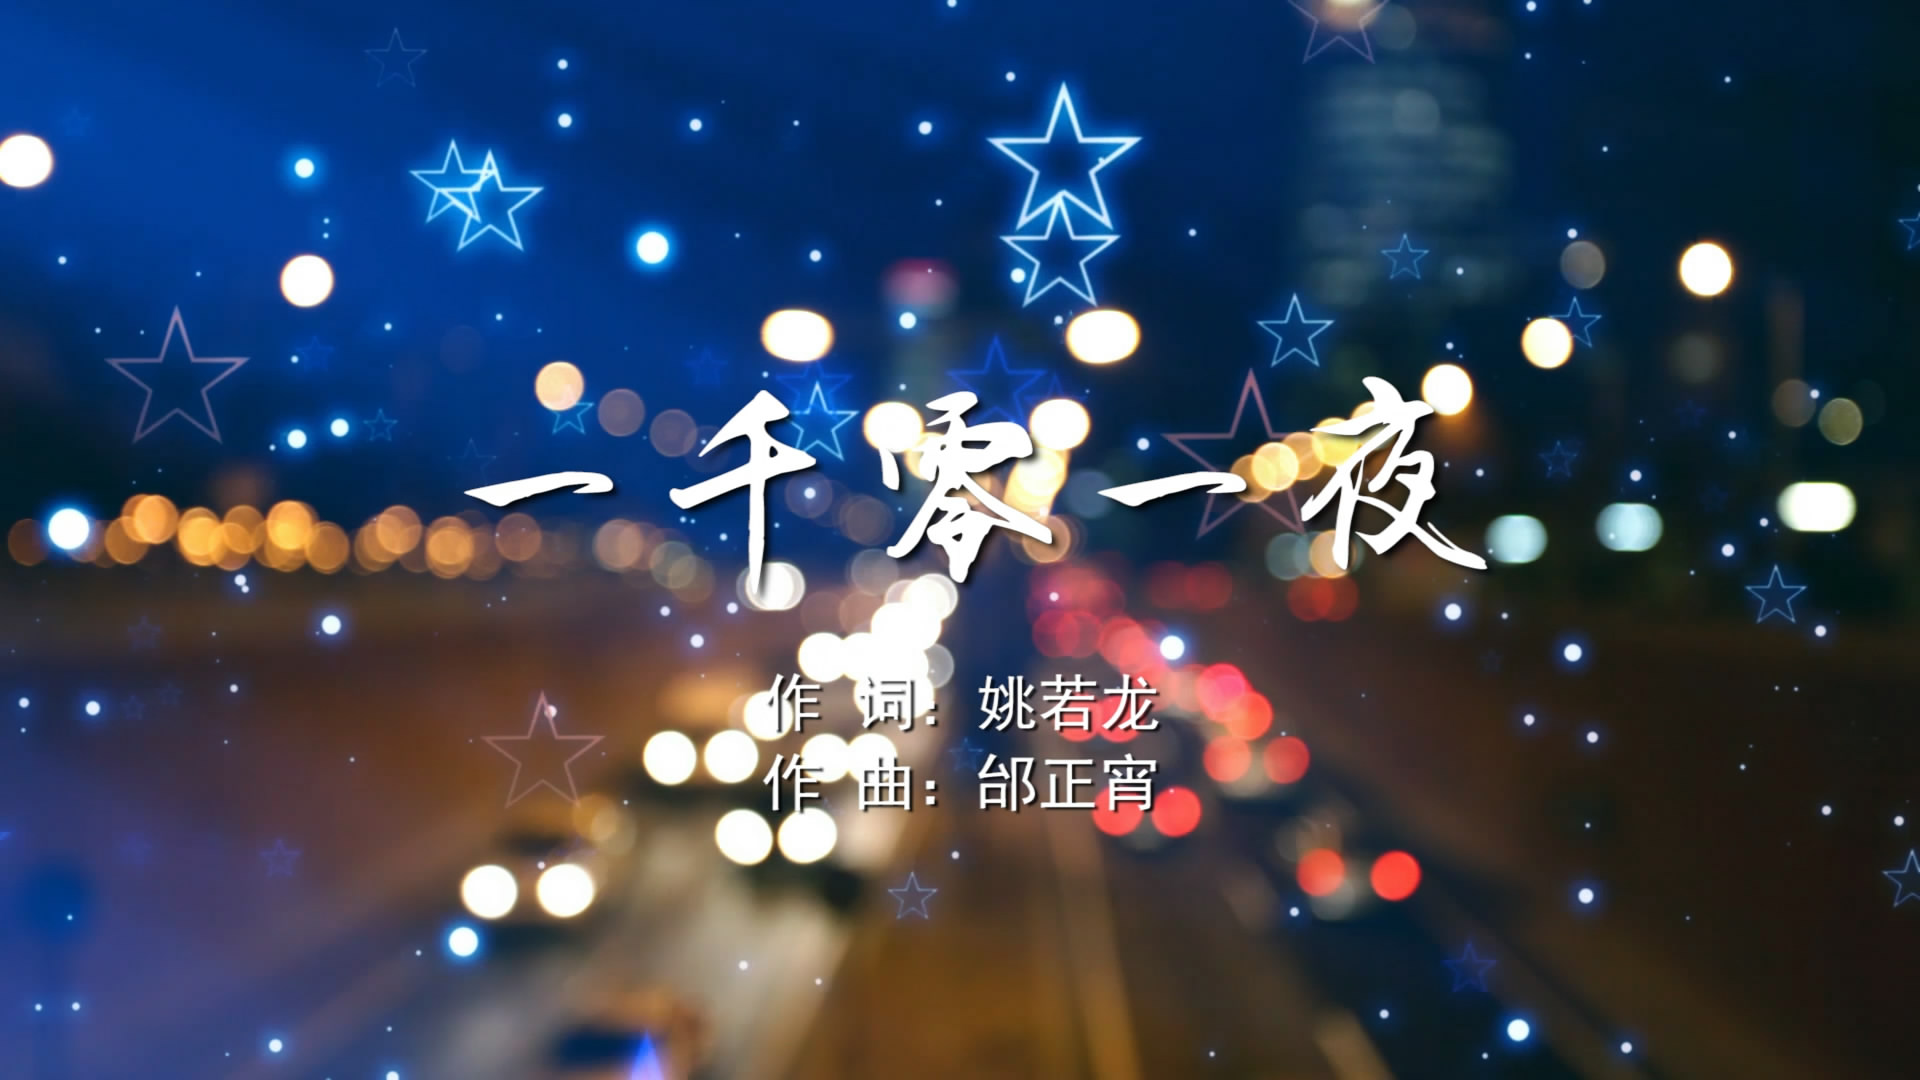 一千零一夜 邰正宵MV字幕配乐伴奏舞台演出LED背景大屏幕视频素材TV